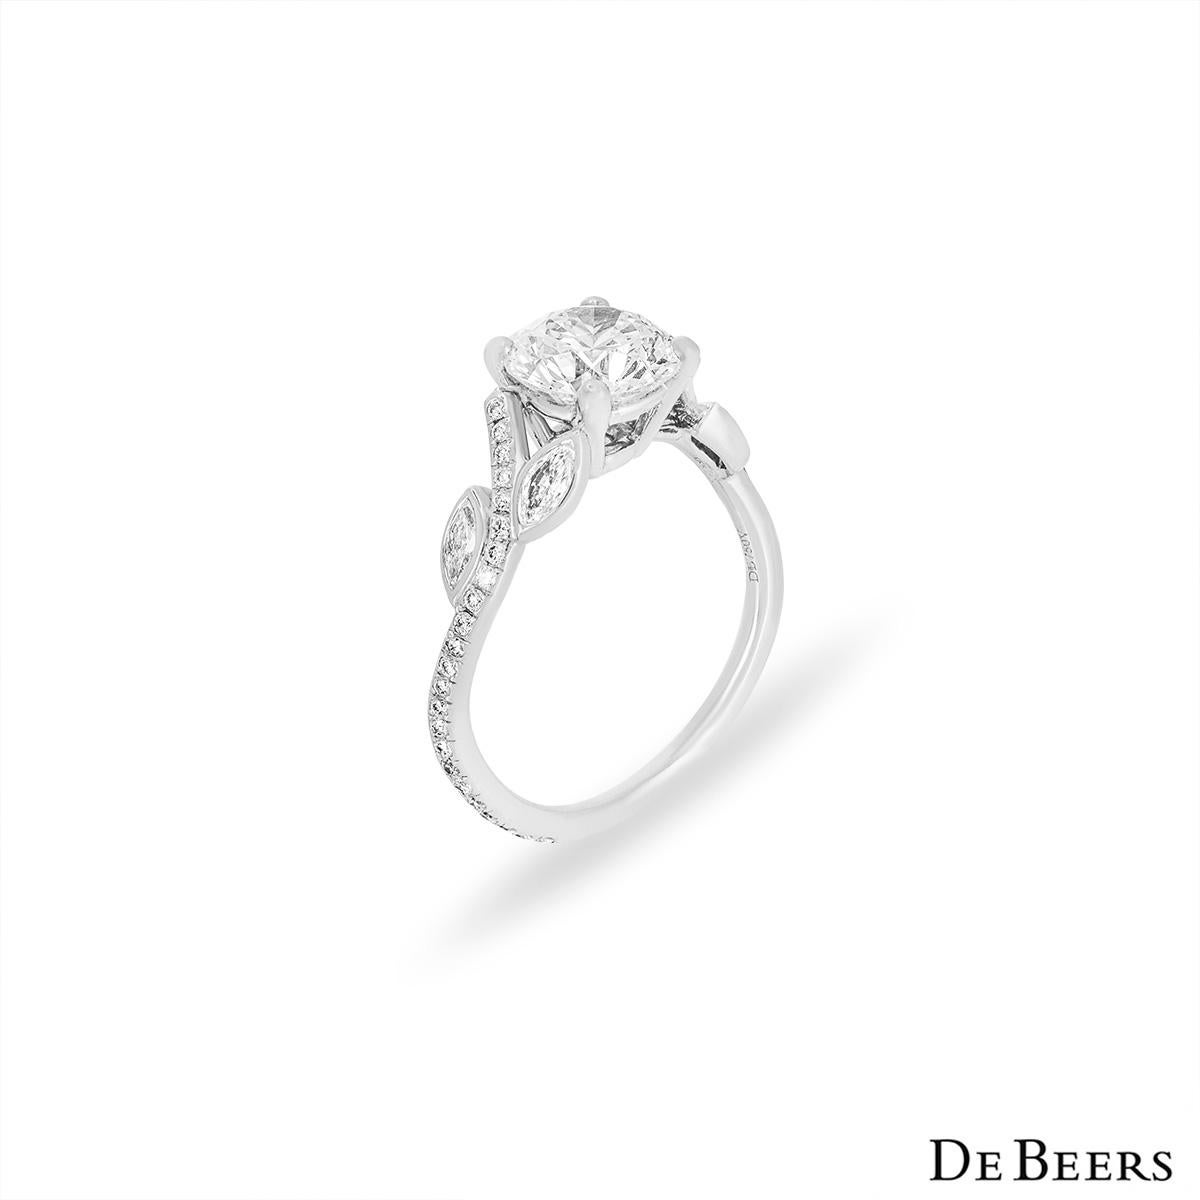 Une bague en diamant de platine de la collection Adonis Rose de De Beers. Le diamant central pèse 1,04ct, est de couleur E et de pureté VS1. La pierre centrale est mise en valeur par la gracieuse monture pavée de diamants, composée de diamants ronds